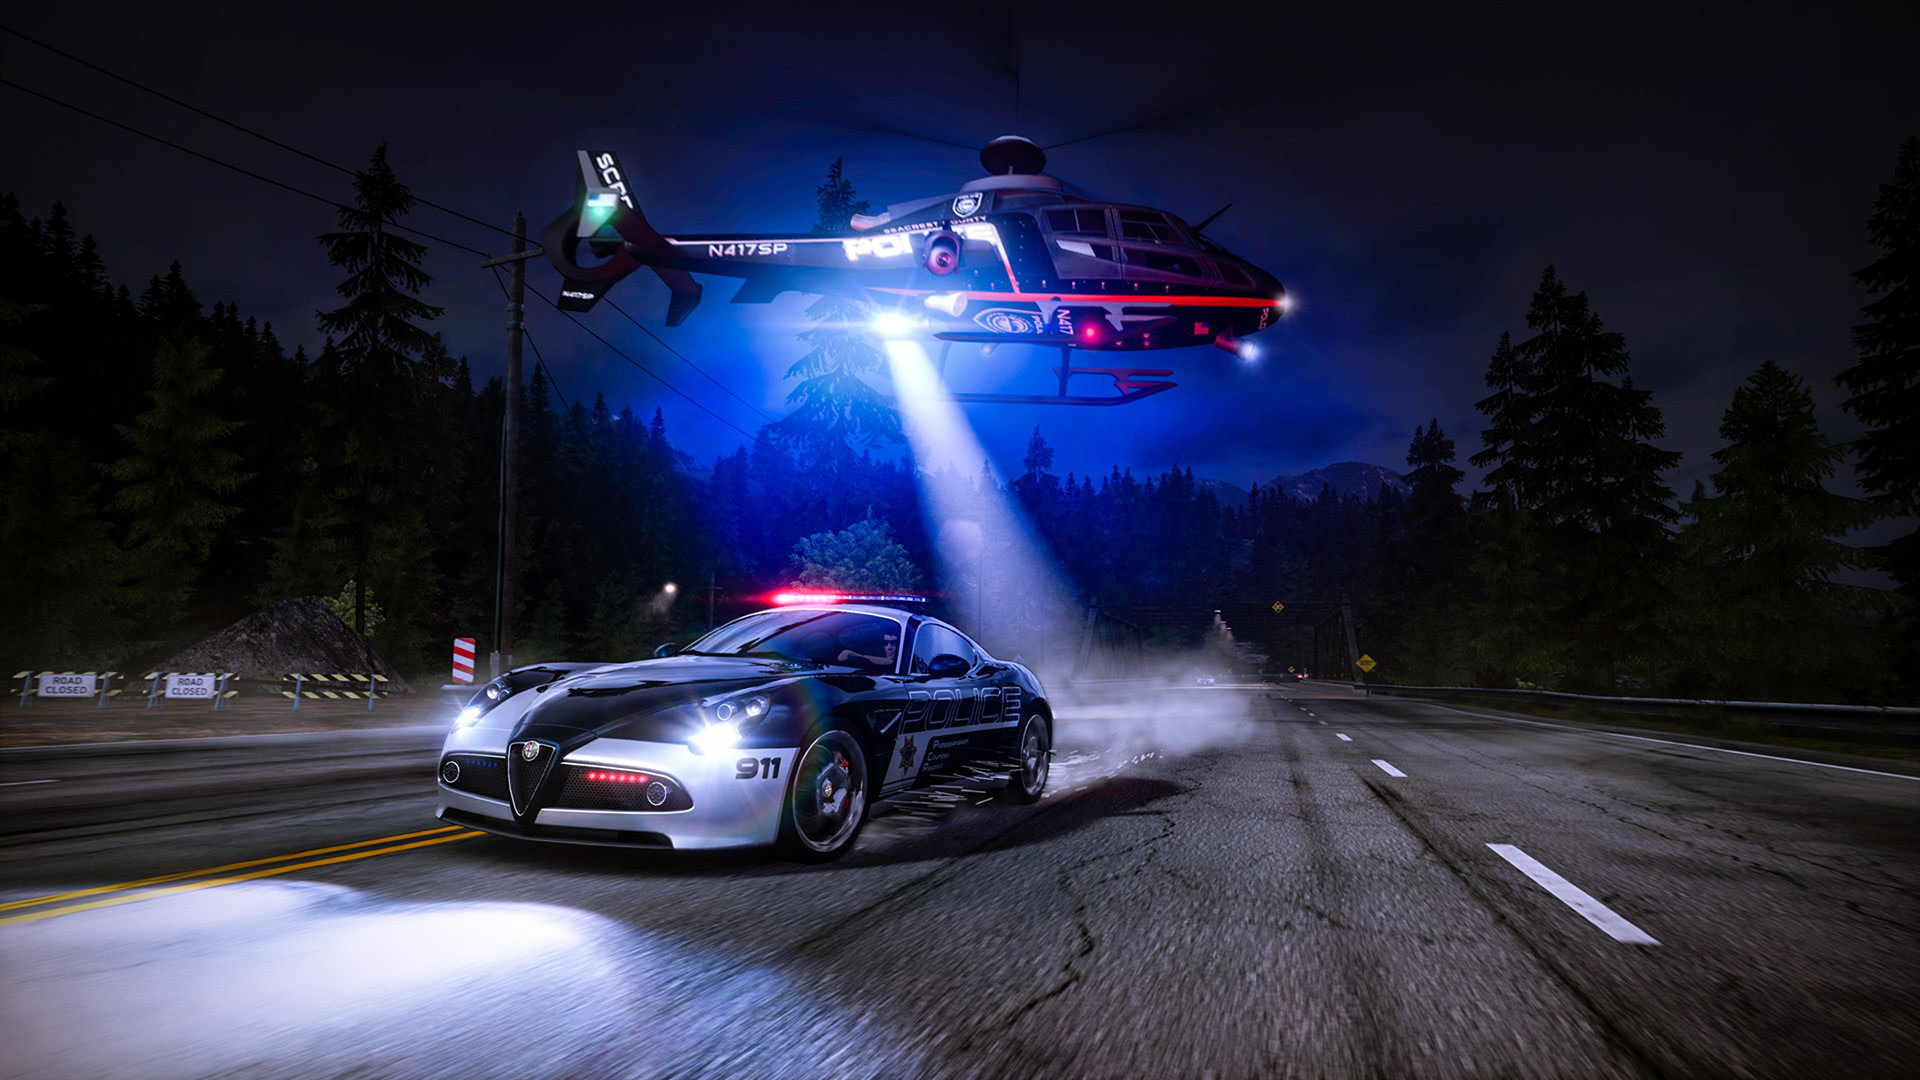 حضور هلی کوپتر و پلیس در بازی ریسینگ Need for Speed Hot Pursuit Remastered